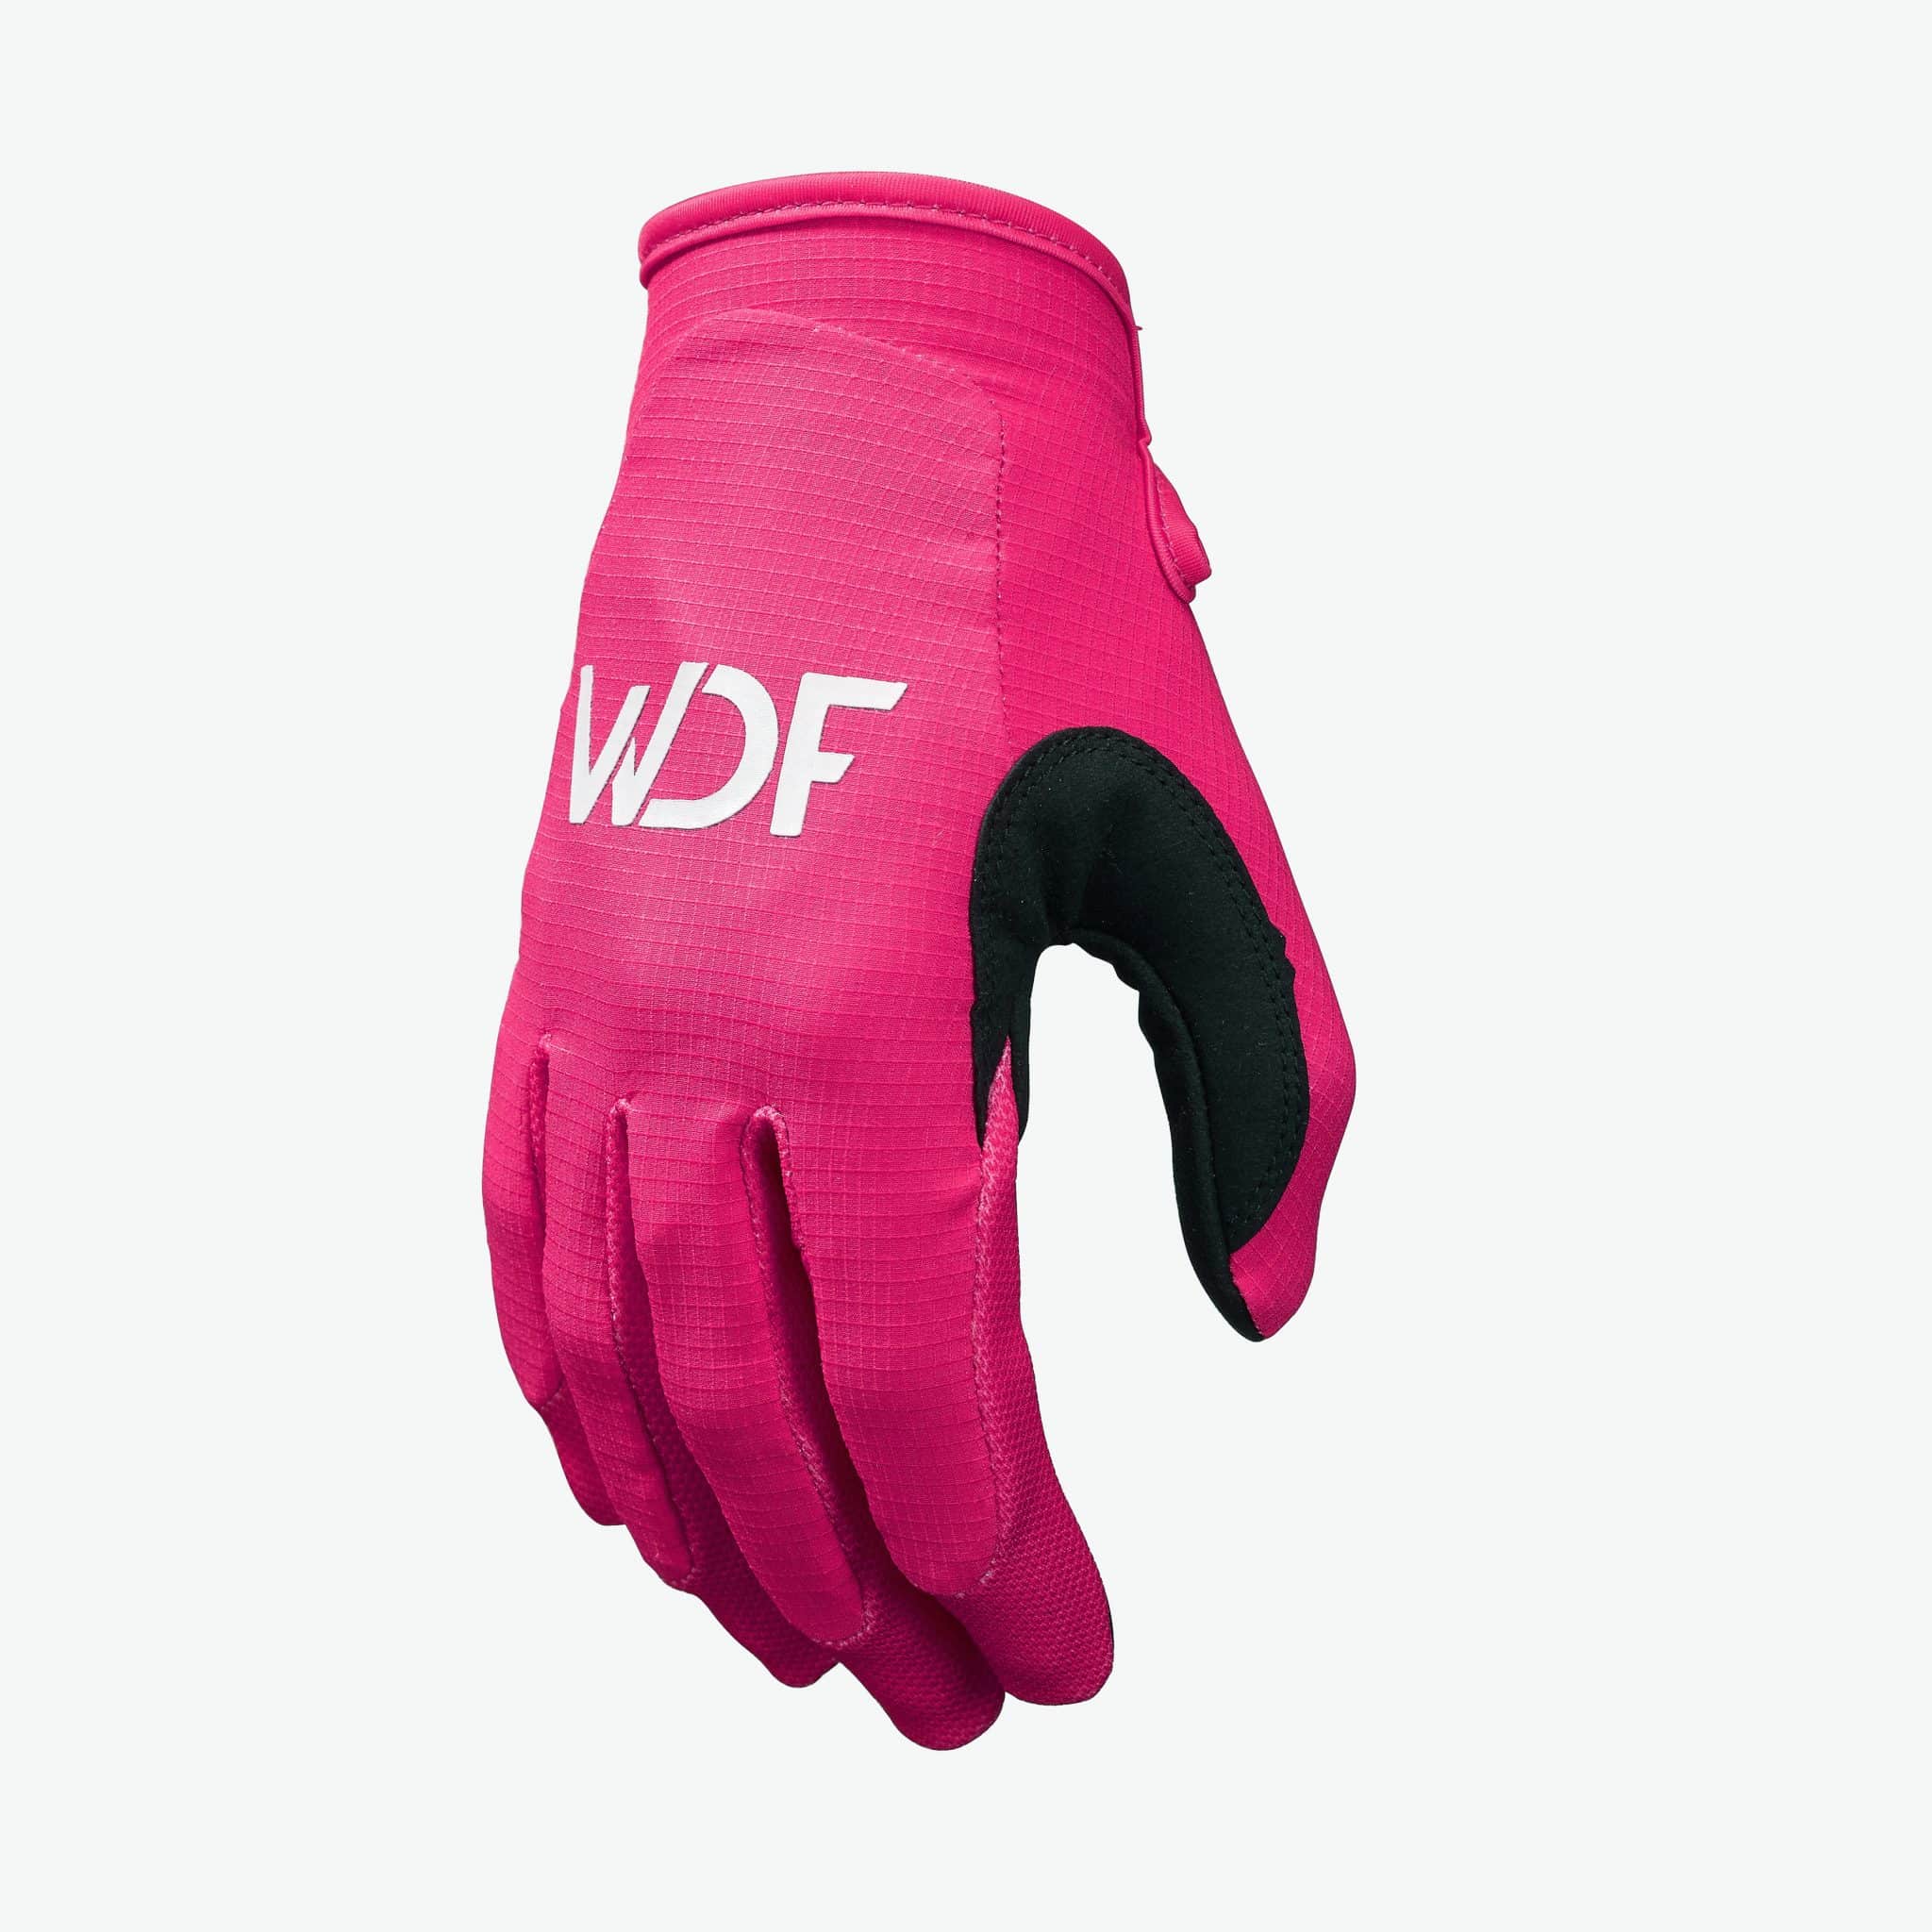 Motocross gloves & - Wicked Dirtbike - MX gloves Family gear